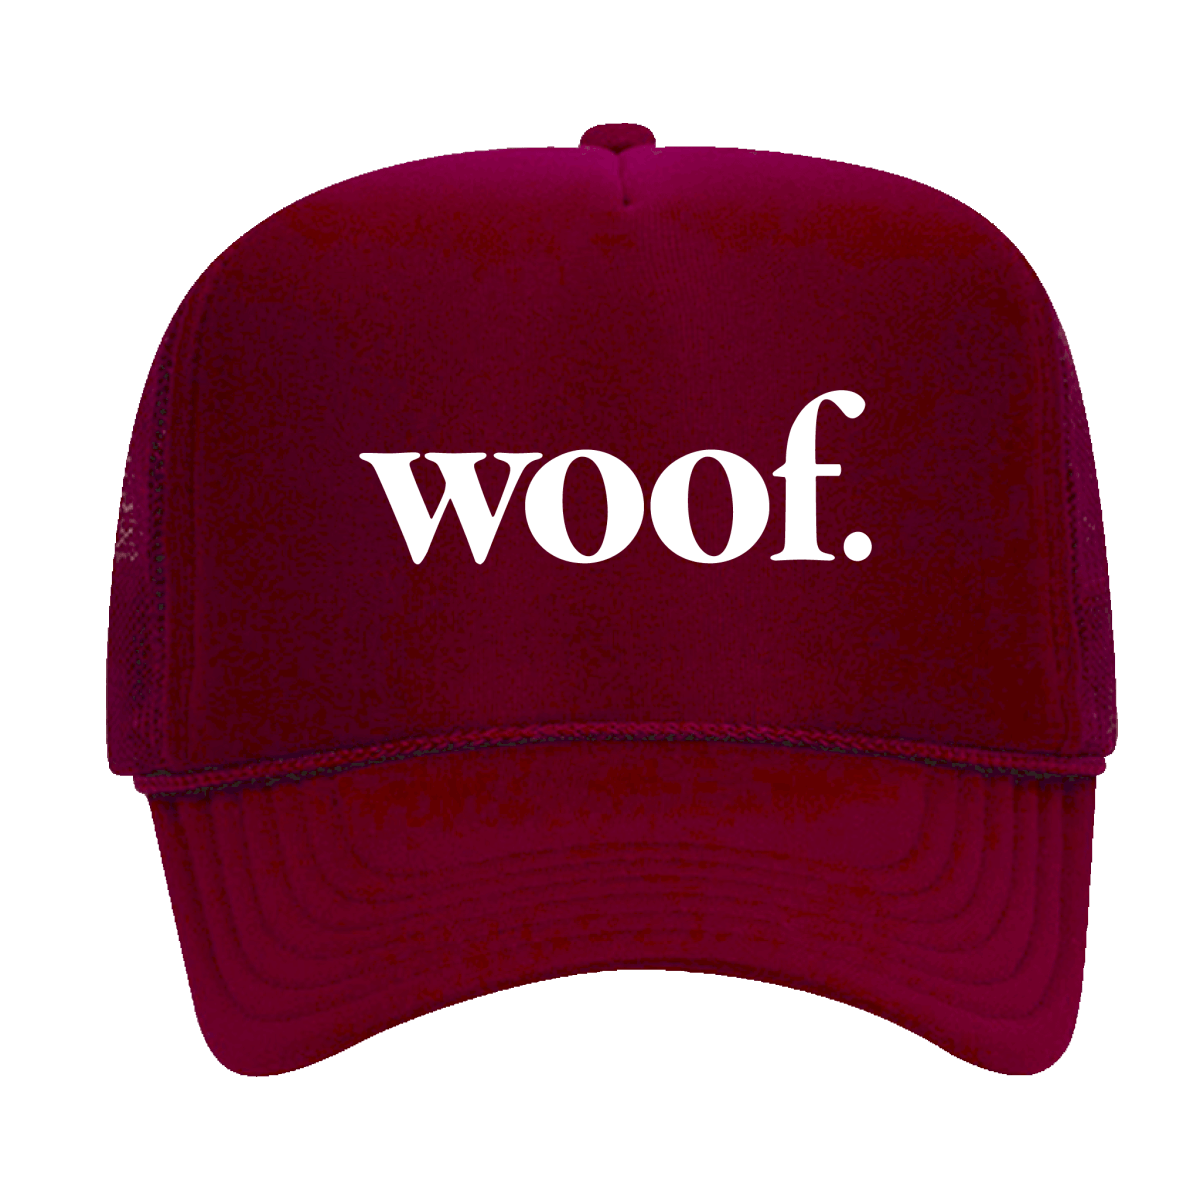 Woof Trucker Hat - Shop B-Unlimited